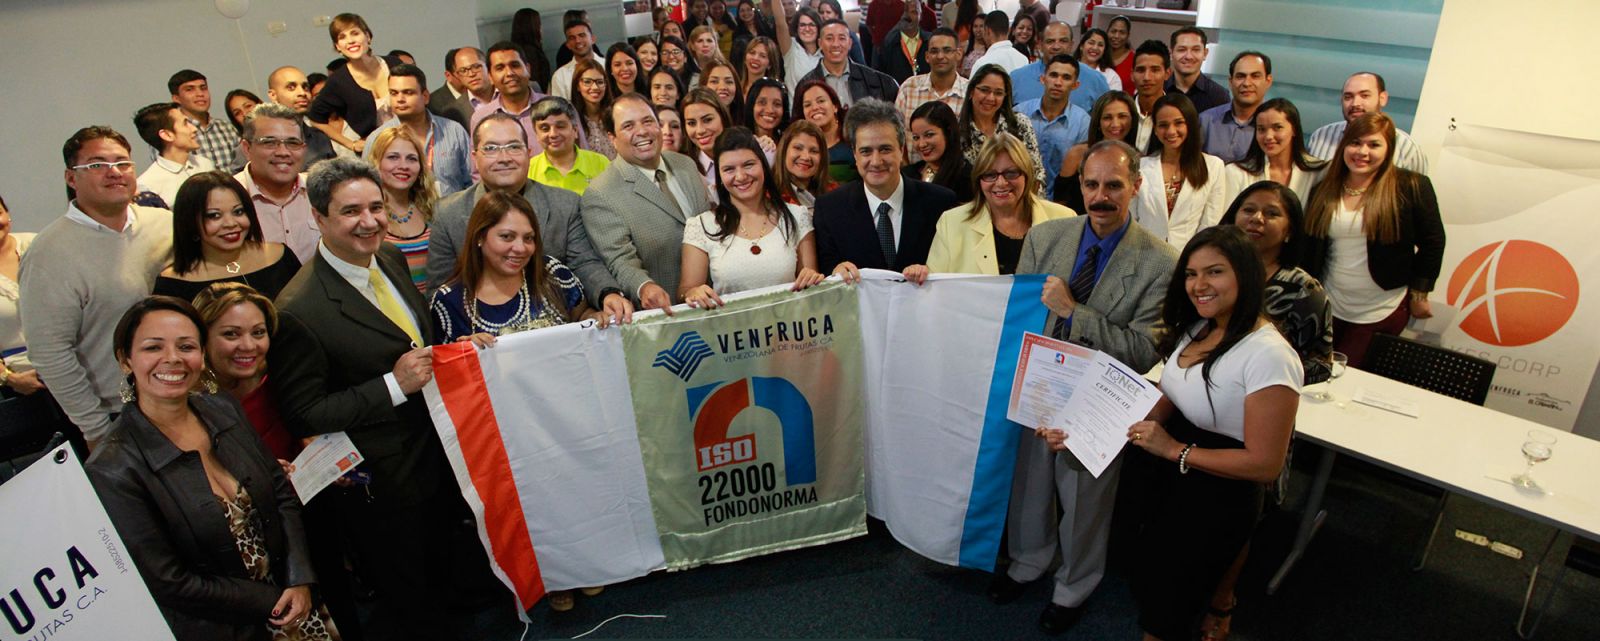 Venfuca se convirtió en la tercera empresa certificada en Venezuela